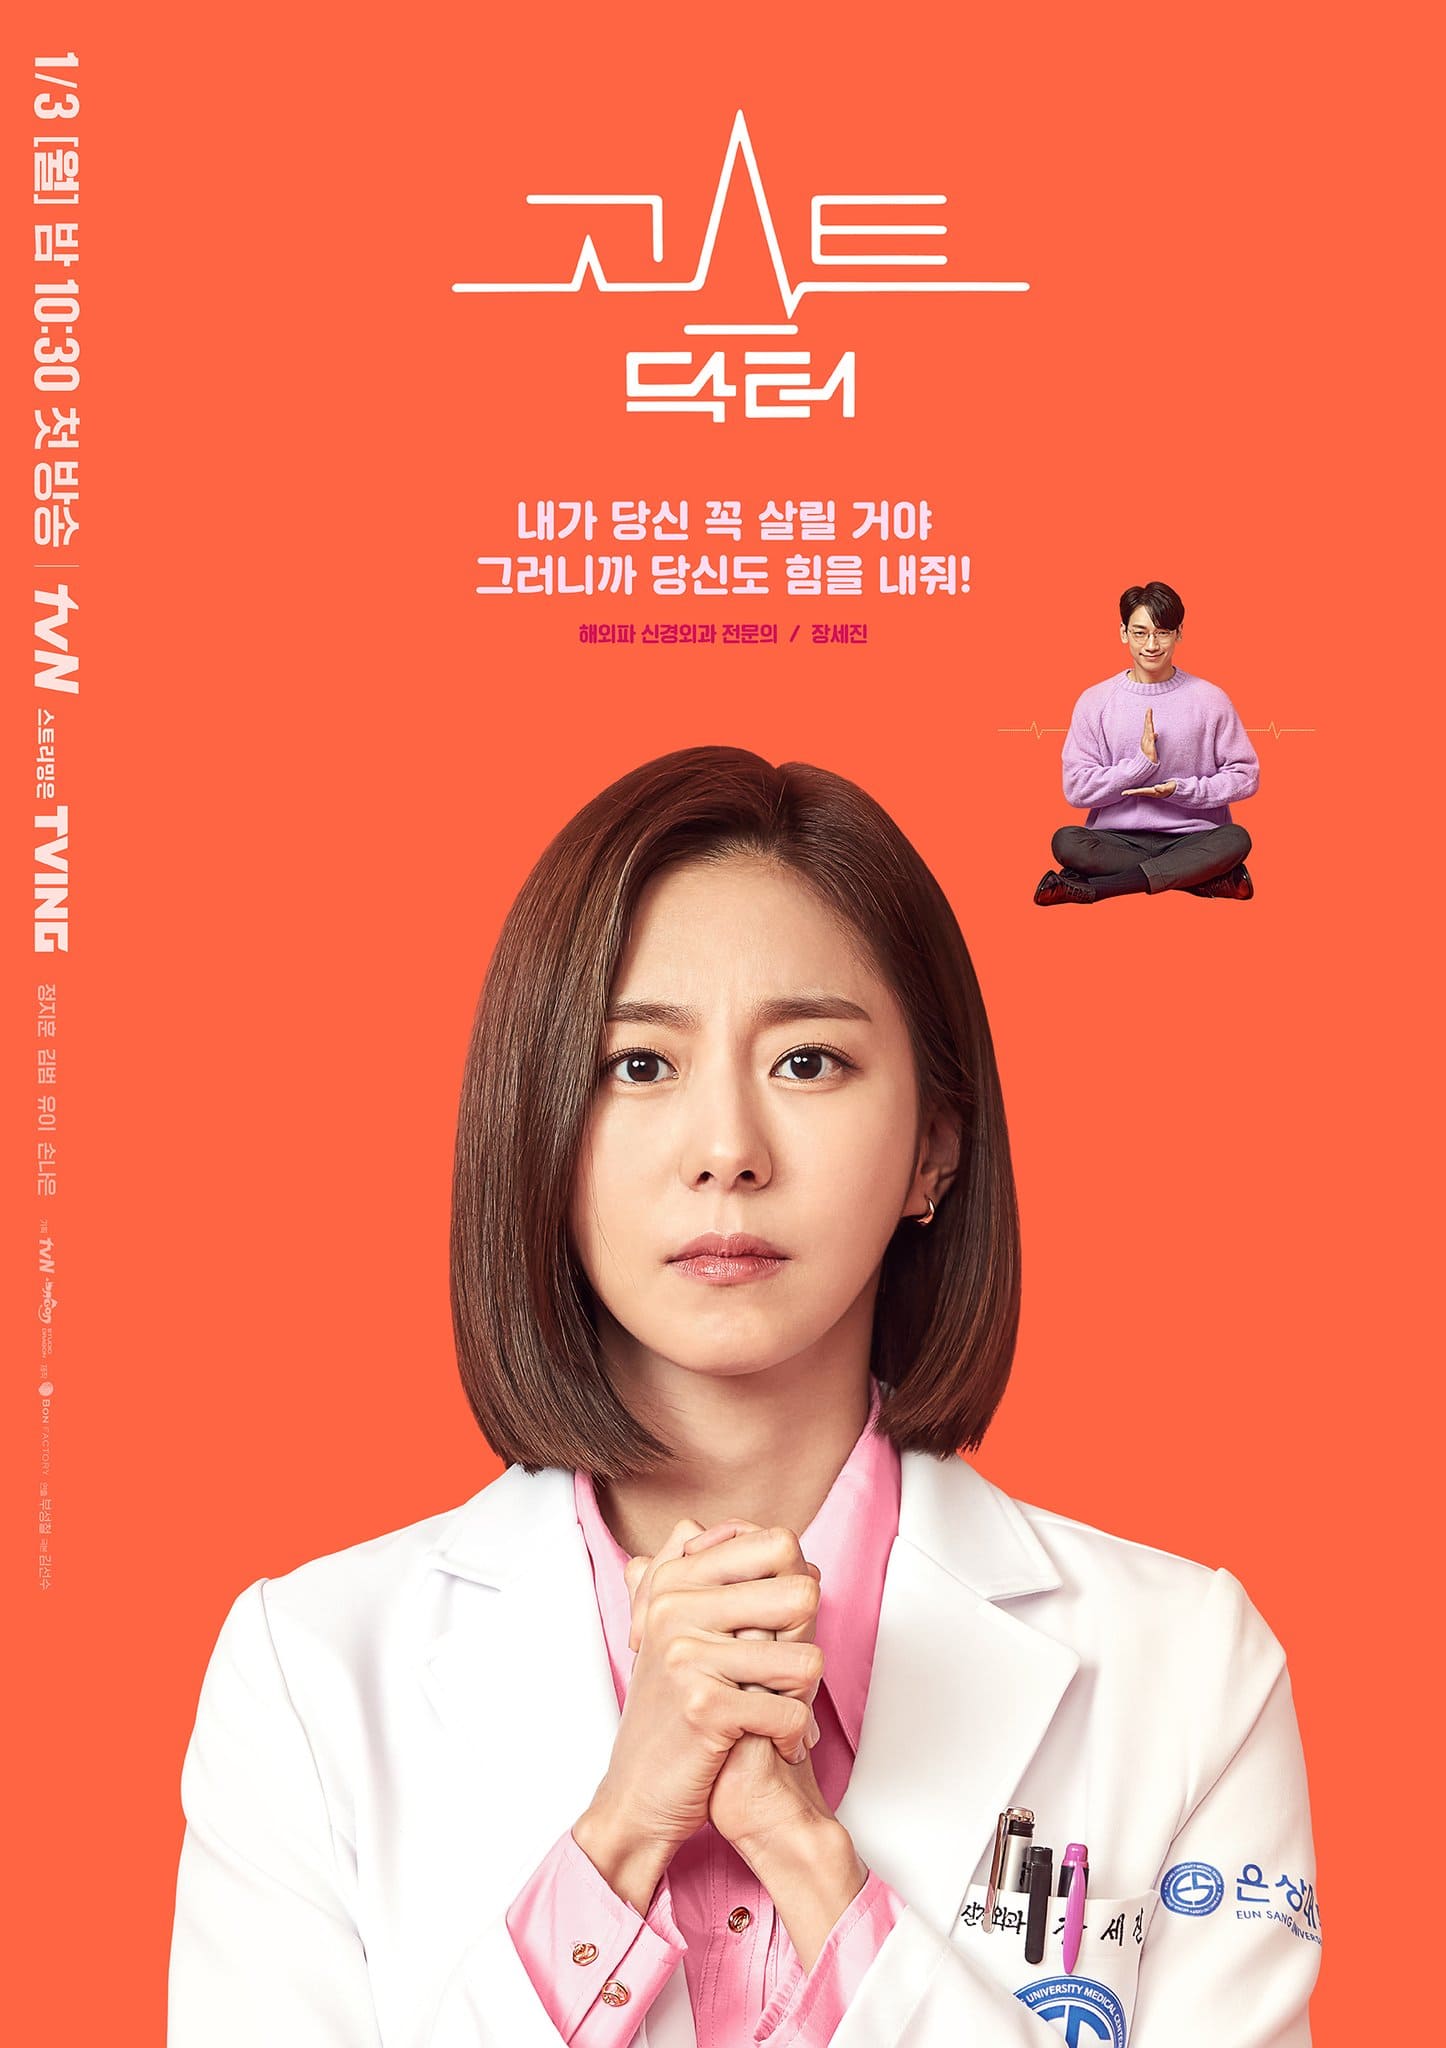 Rain, Kim Bum, Son Naeun de Apink y Uee son médicos enredados por un destino sobrenatural en un nuevo drama de fantasía